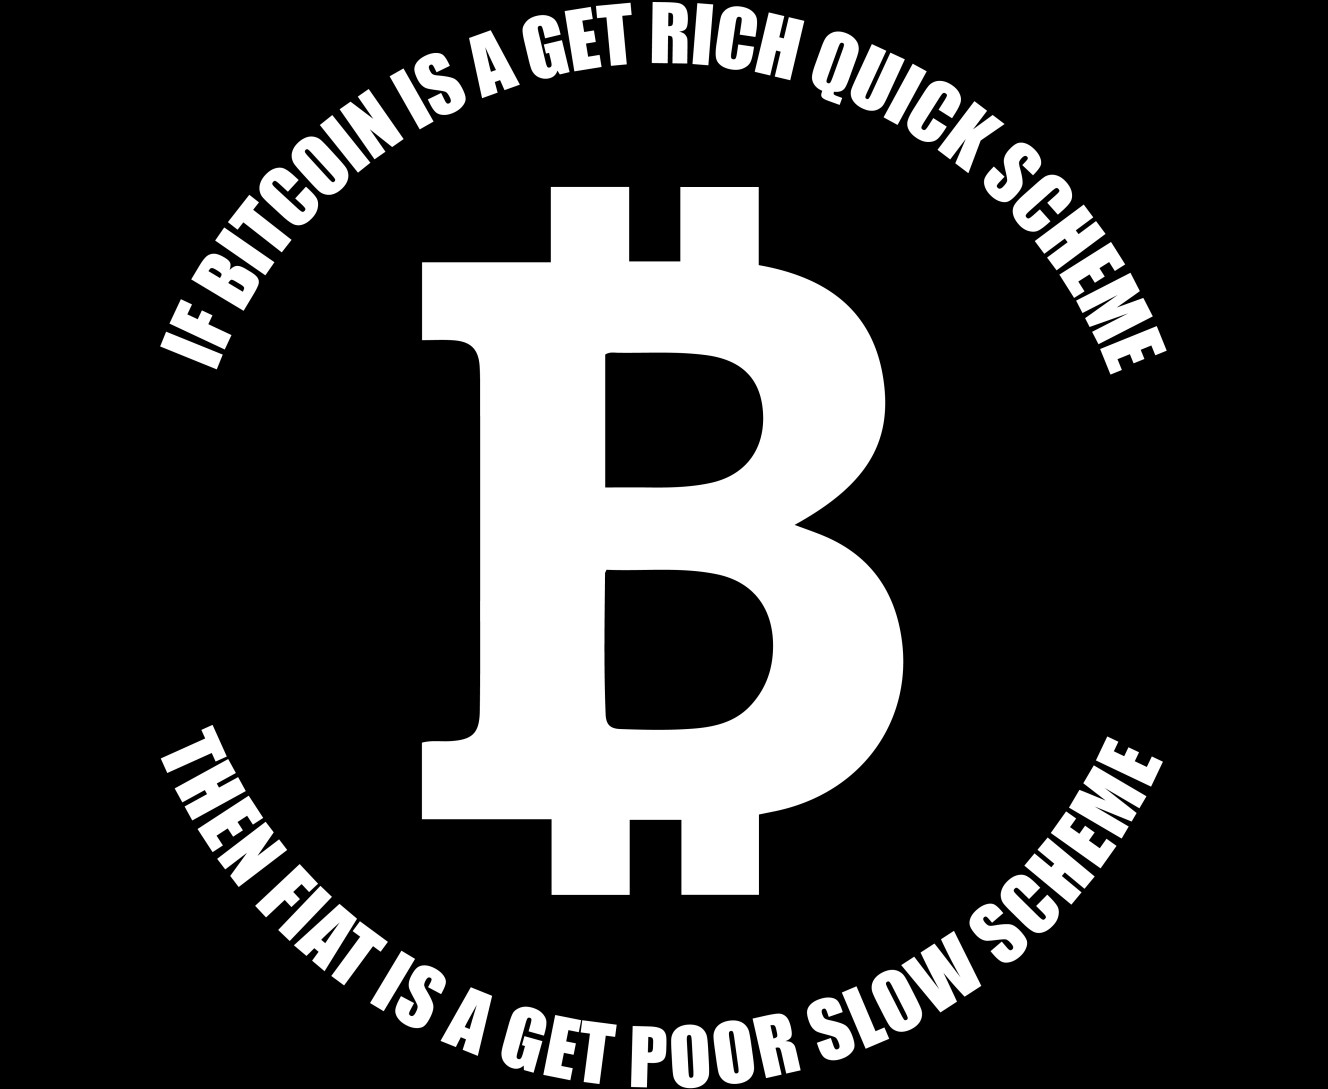 Bitcoin get rich quick scheme